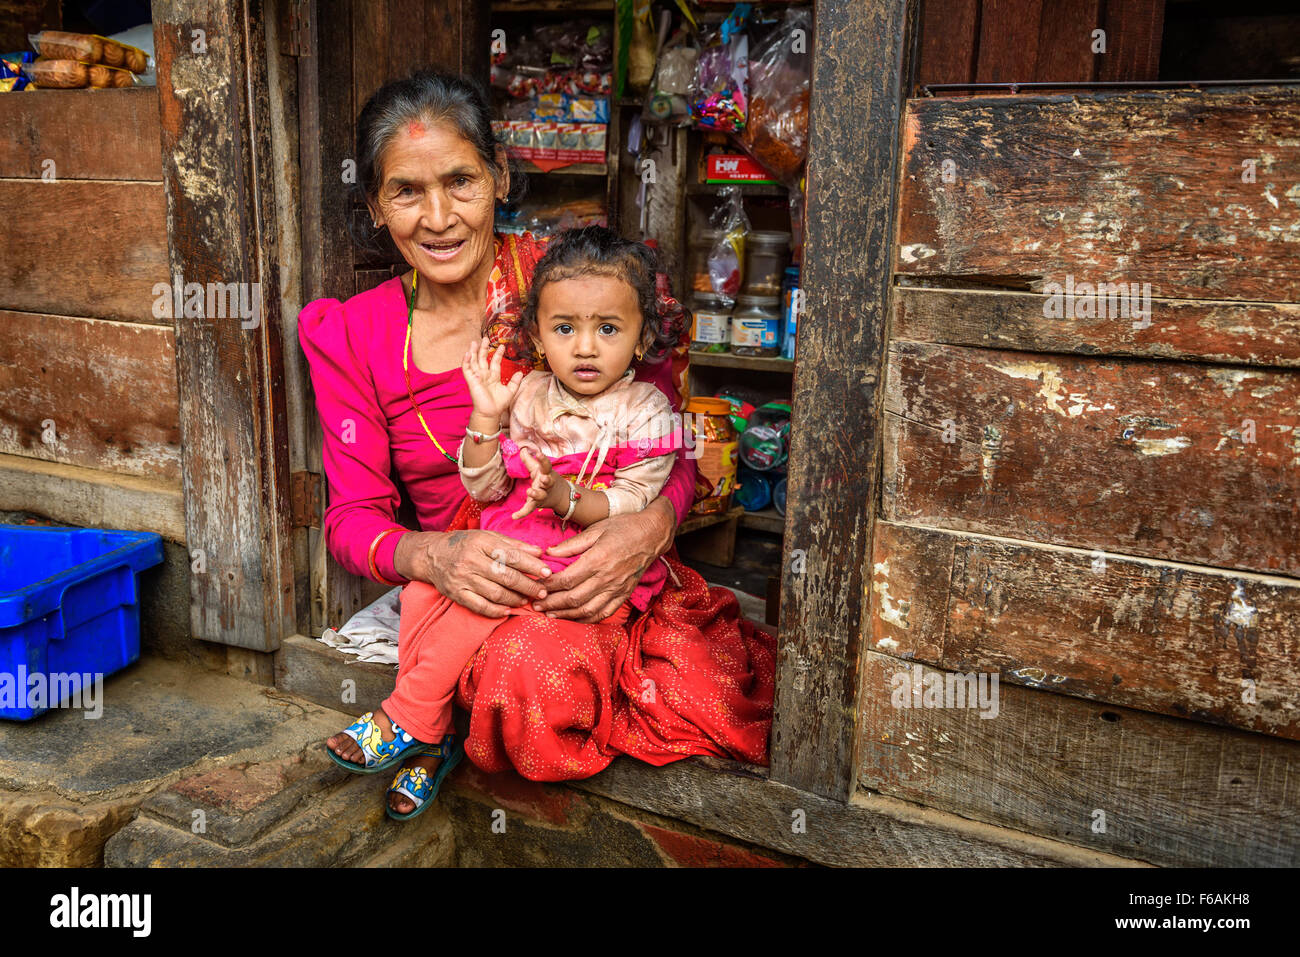 Vecchia Signora nepalese con un bambino vende merci nel suo negozio. Foto Stock